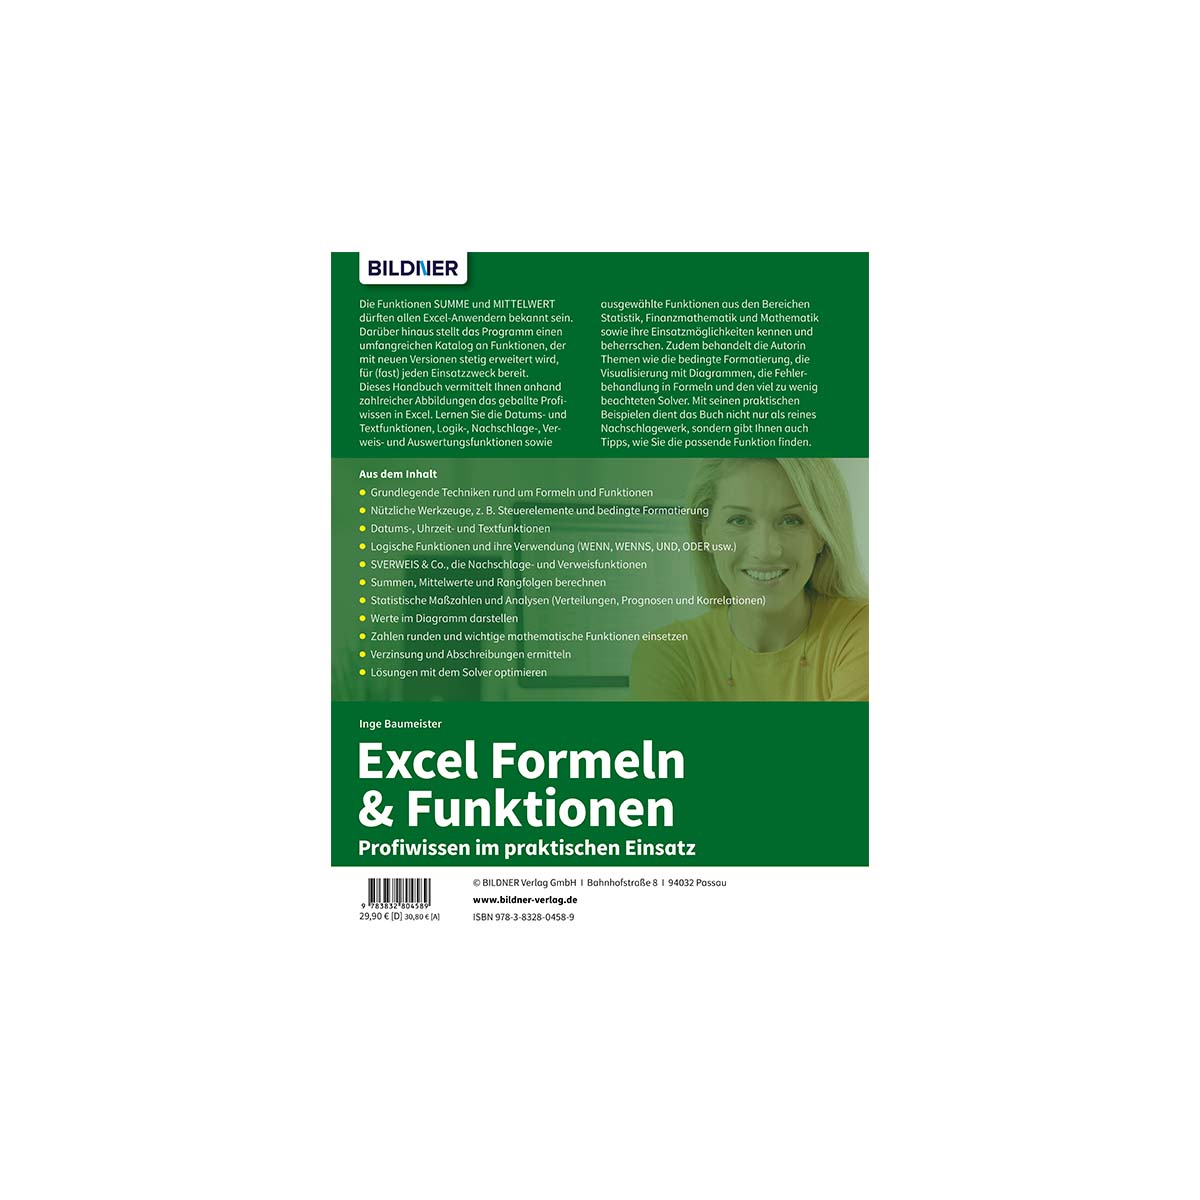 Excel Formeln Profiwissen praktischen & Einsatz im Funktionen